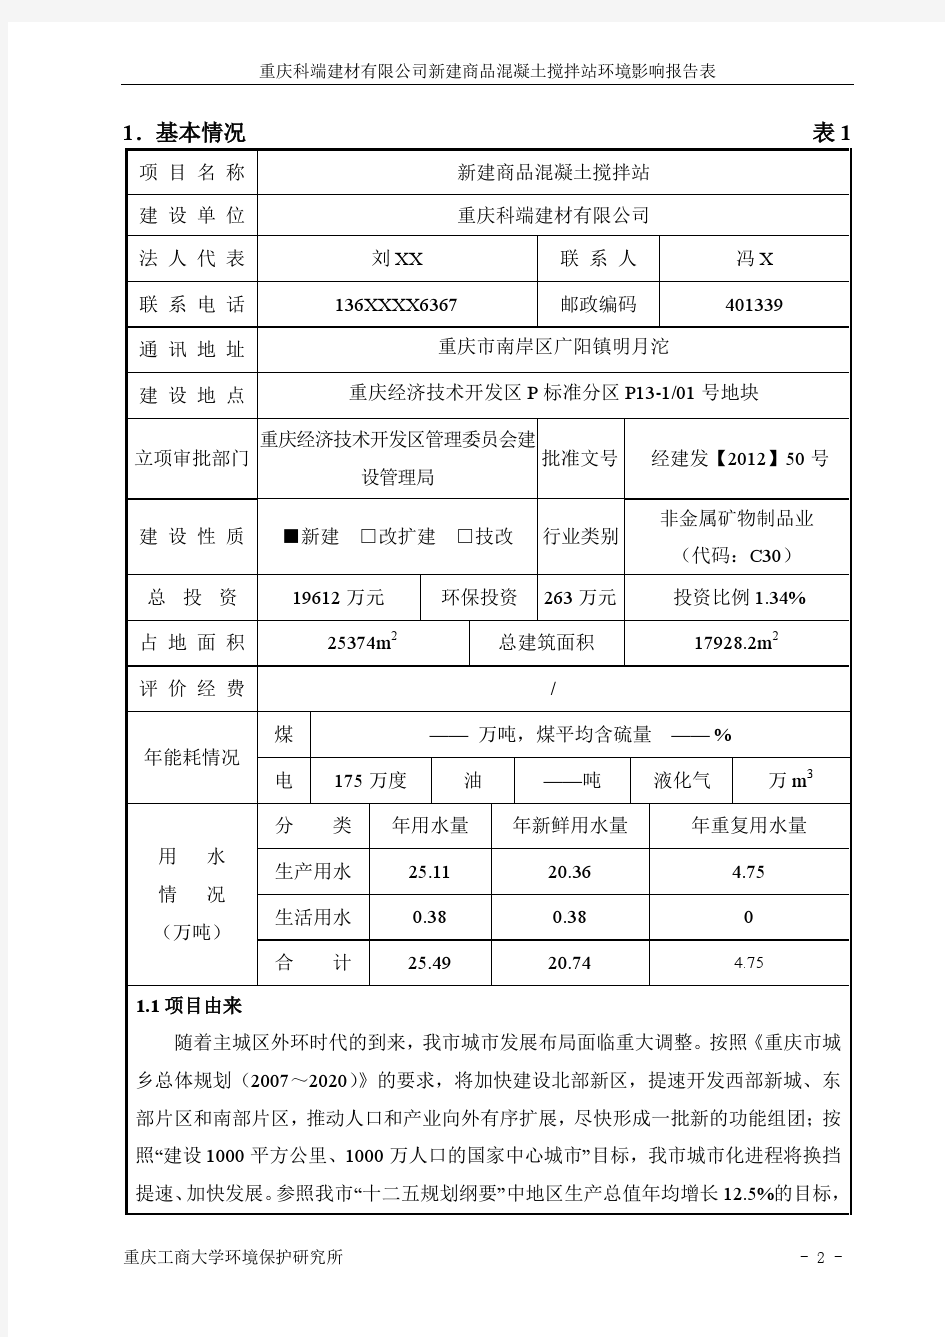 重庆科端建材有限公司新建商品混凝土搅拌站环评表